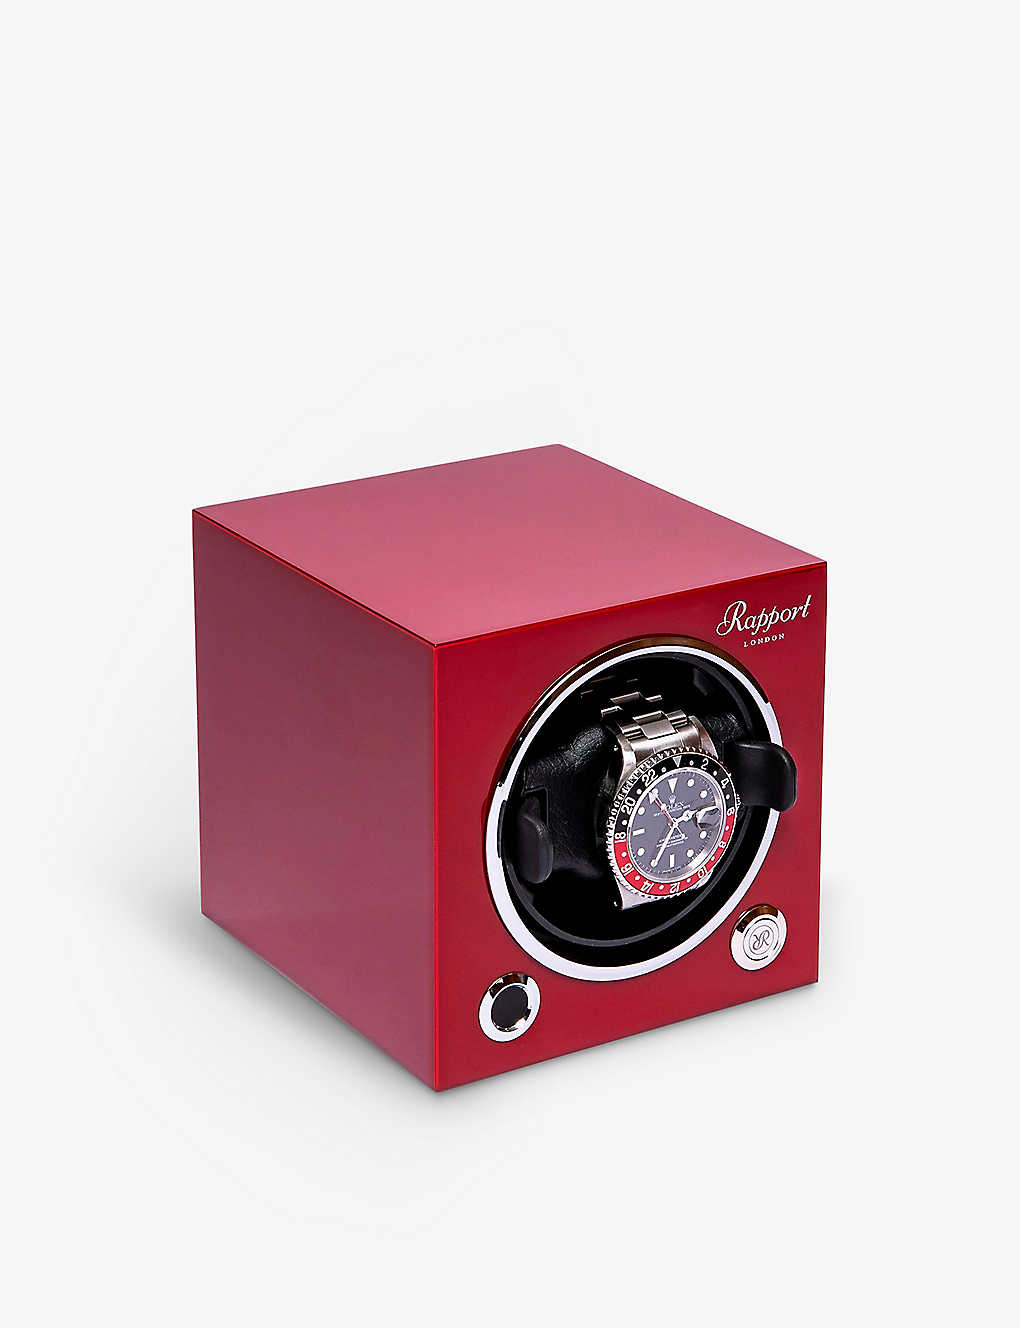 The Alkemistry Womens Red Rapport London Evo Single Wooden Watch Winder Cube